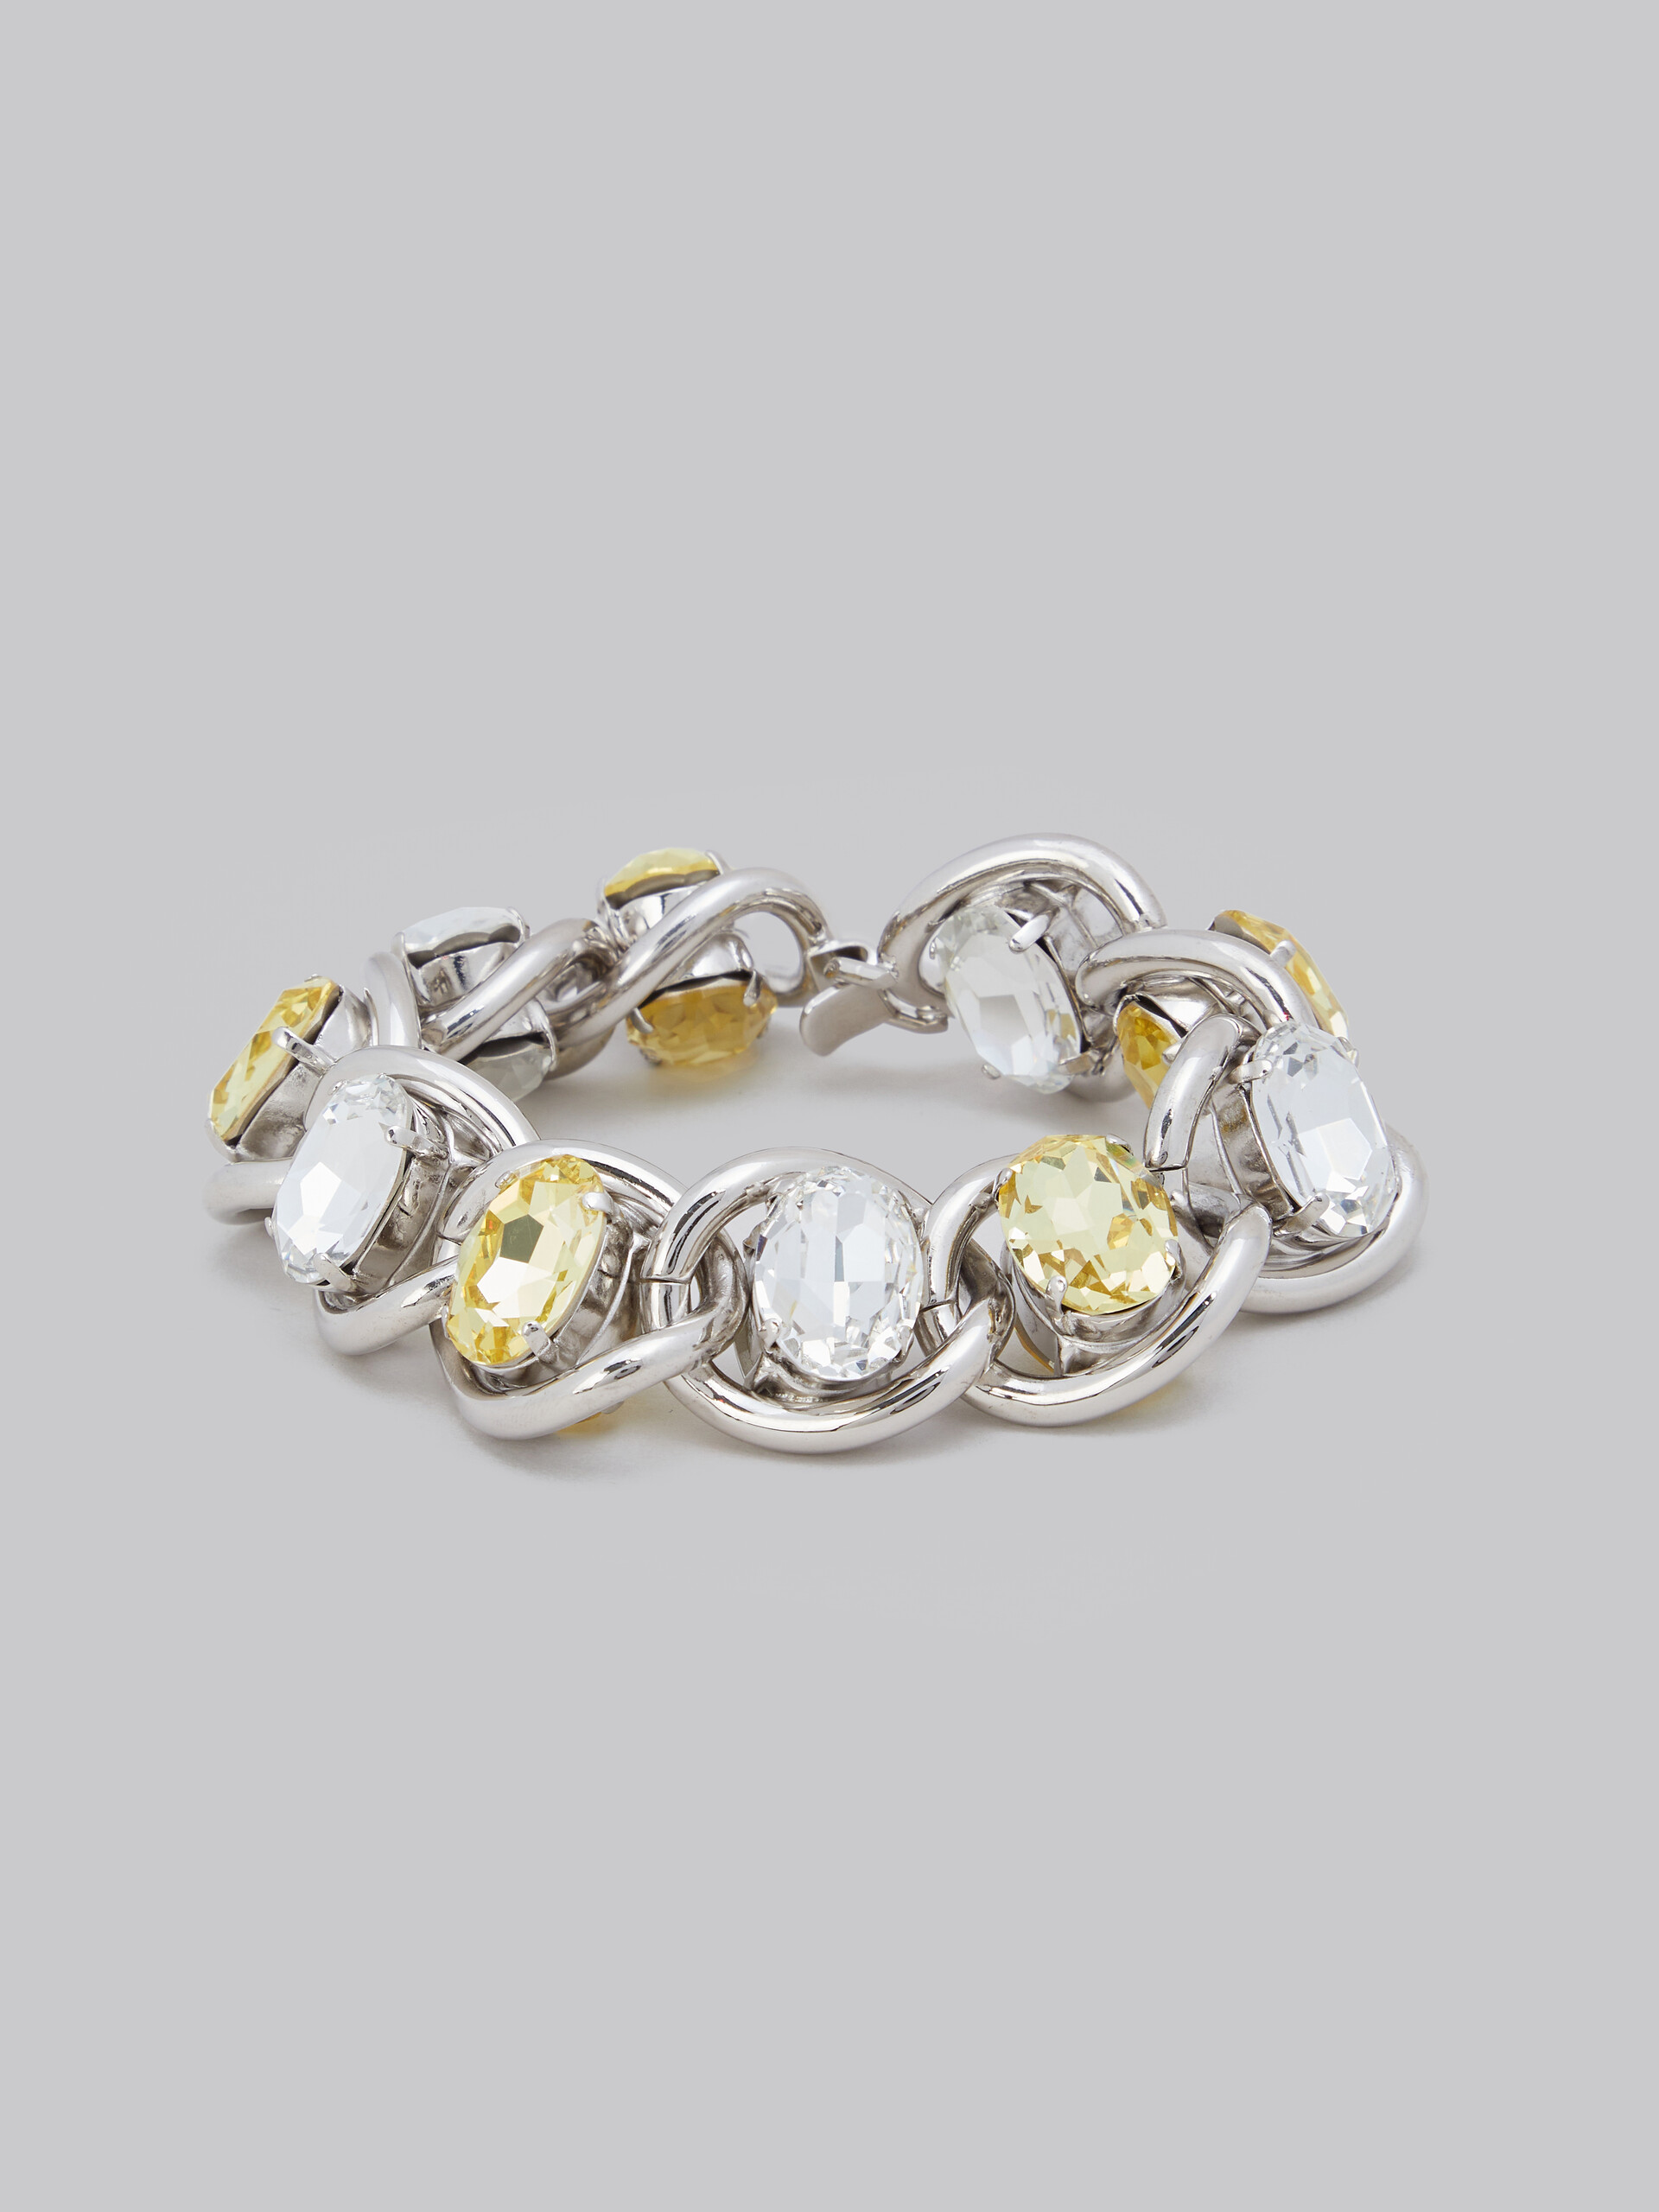 Bracelet en chaîne épaisse avec strass transparents et jaunes - Bracelets - Image 4